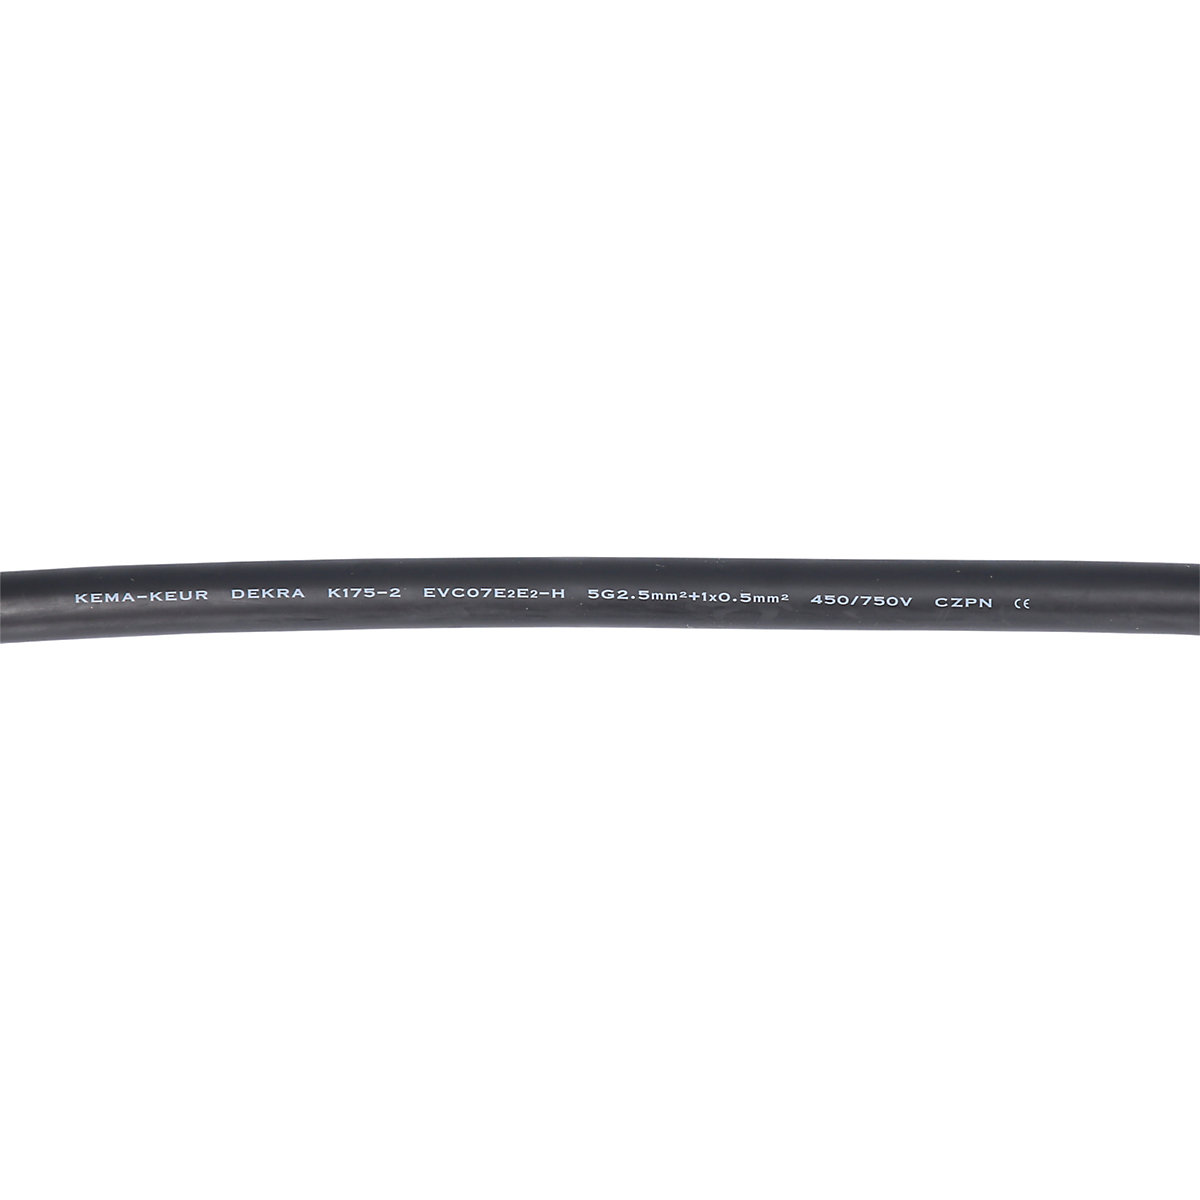 Cable de carga efuturo recto (Imagen del producto 9)-8